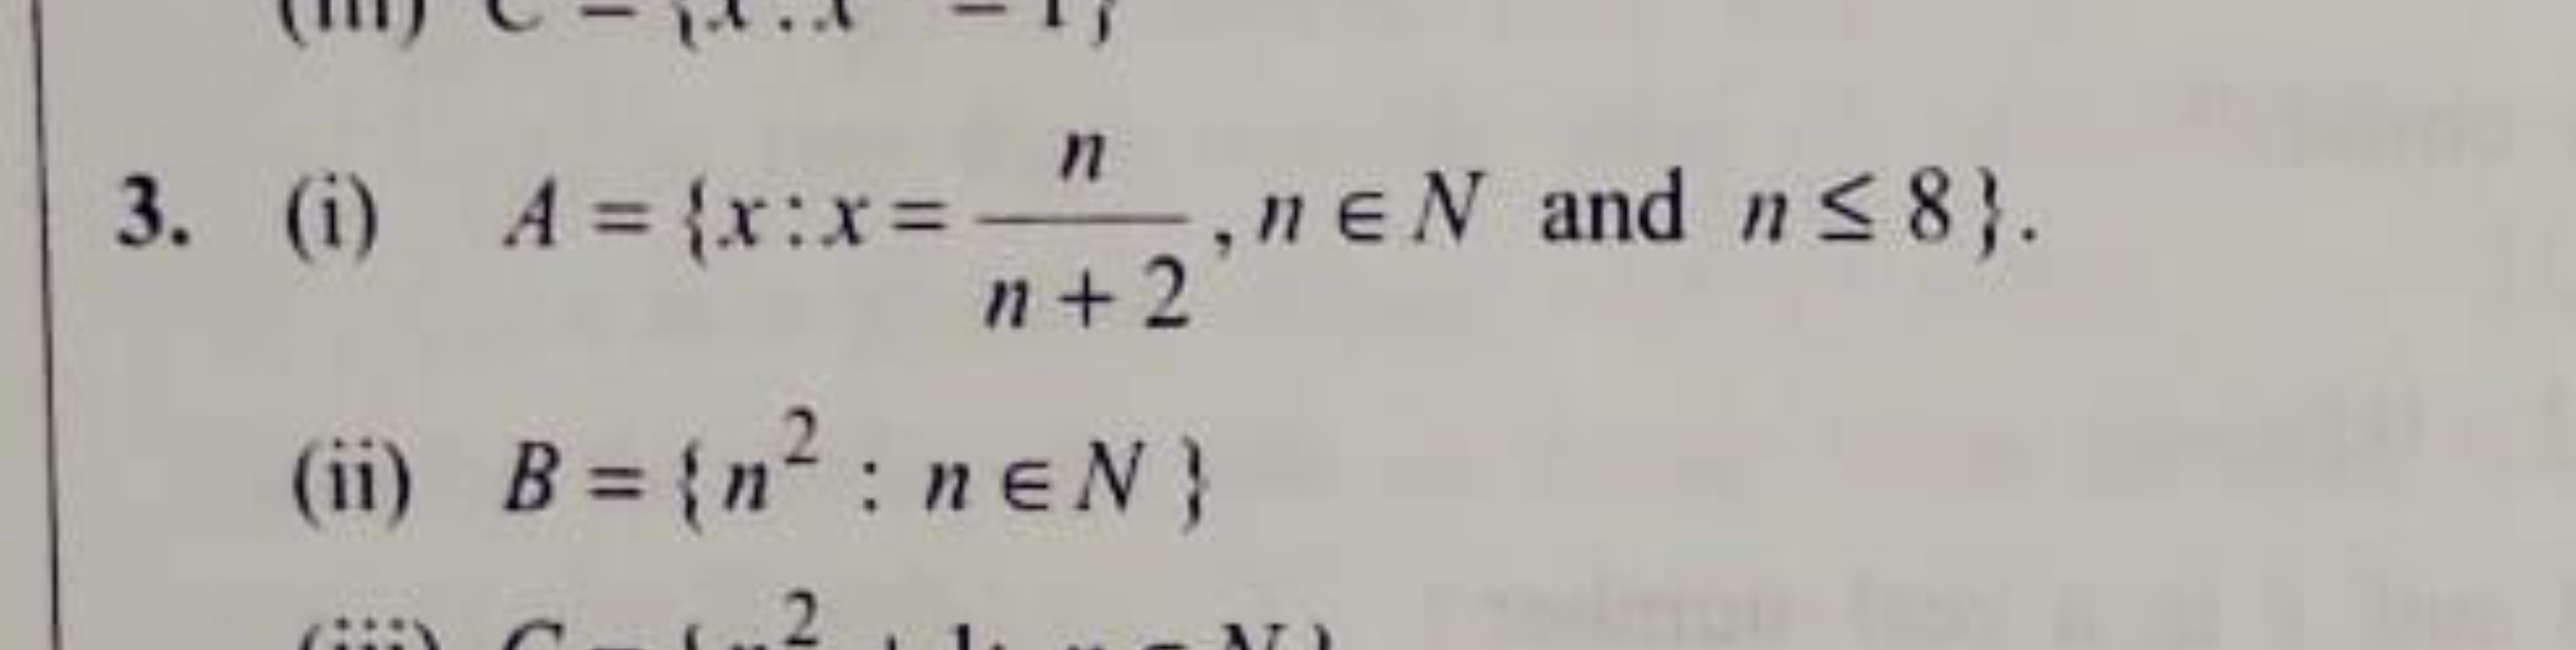 3. (i) A={x:x=n+2n​,n∈N and n≤8}.
(ii) B={n2:n∈N}
